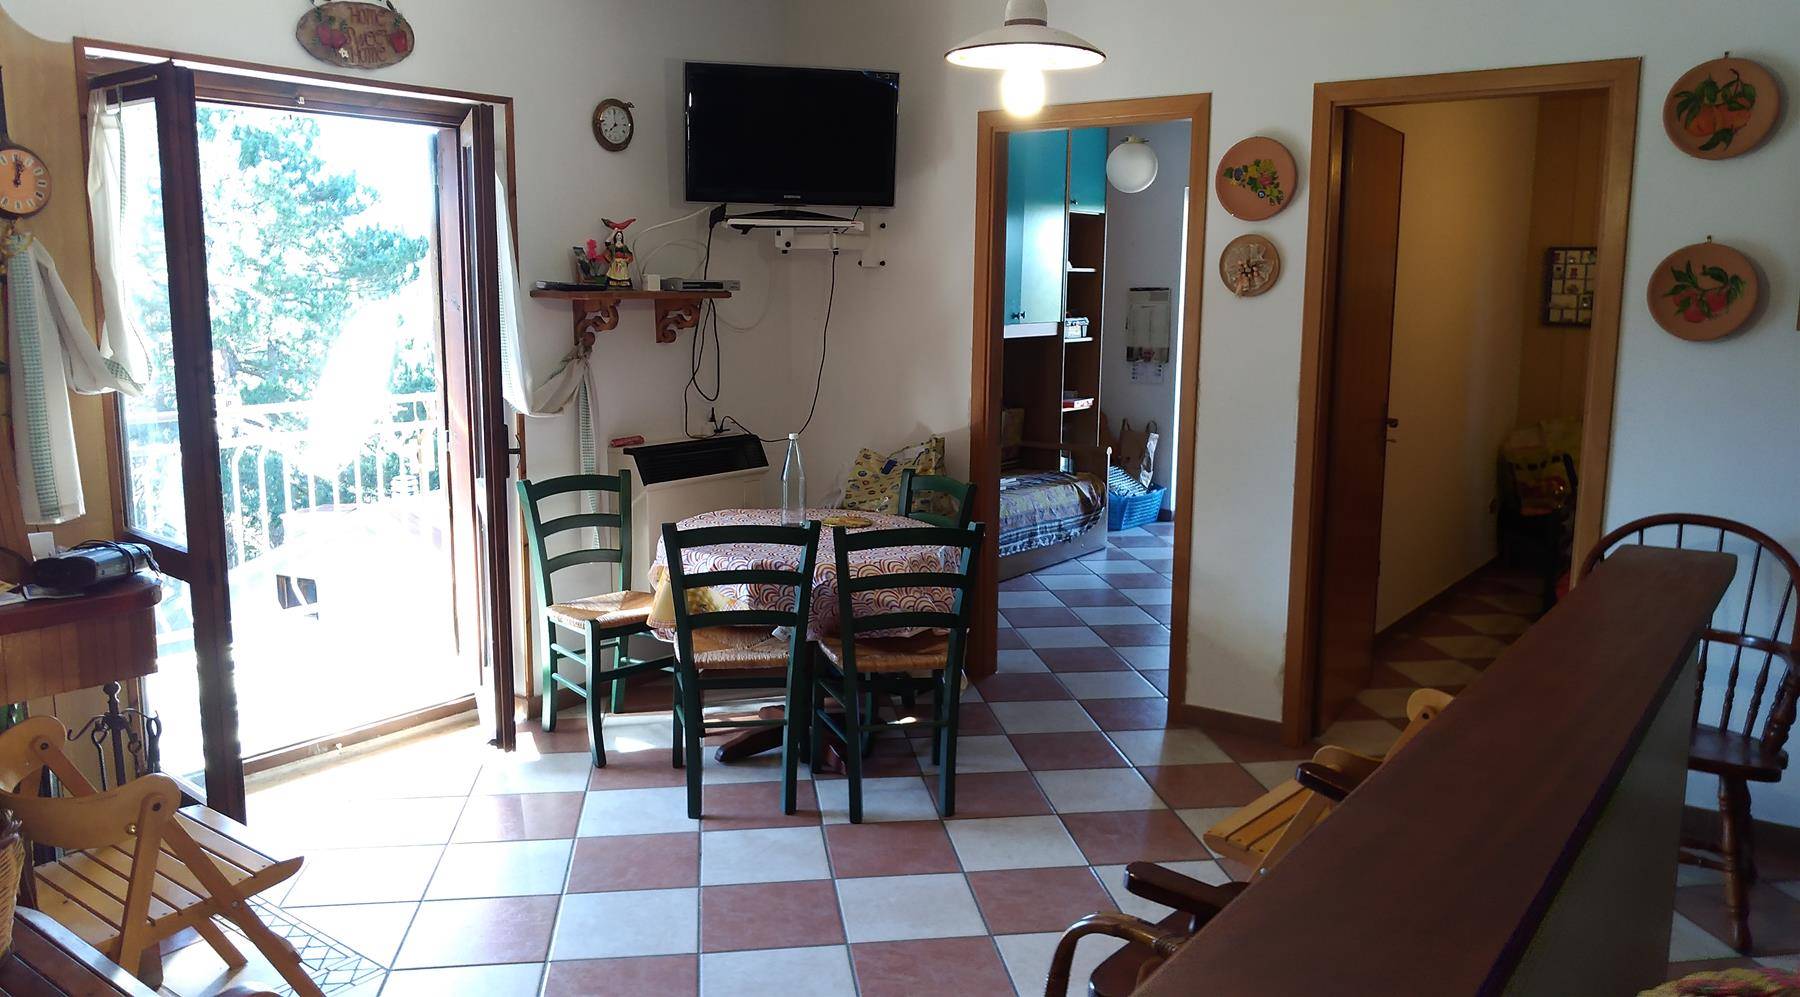 Appartamento in vendita a Spezzano della Sila, 4 locali, zona gliatello Silano, prezzo € 35.000 | PortaleAgenzieImmobiliari.it